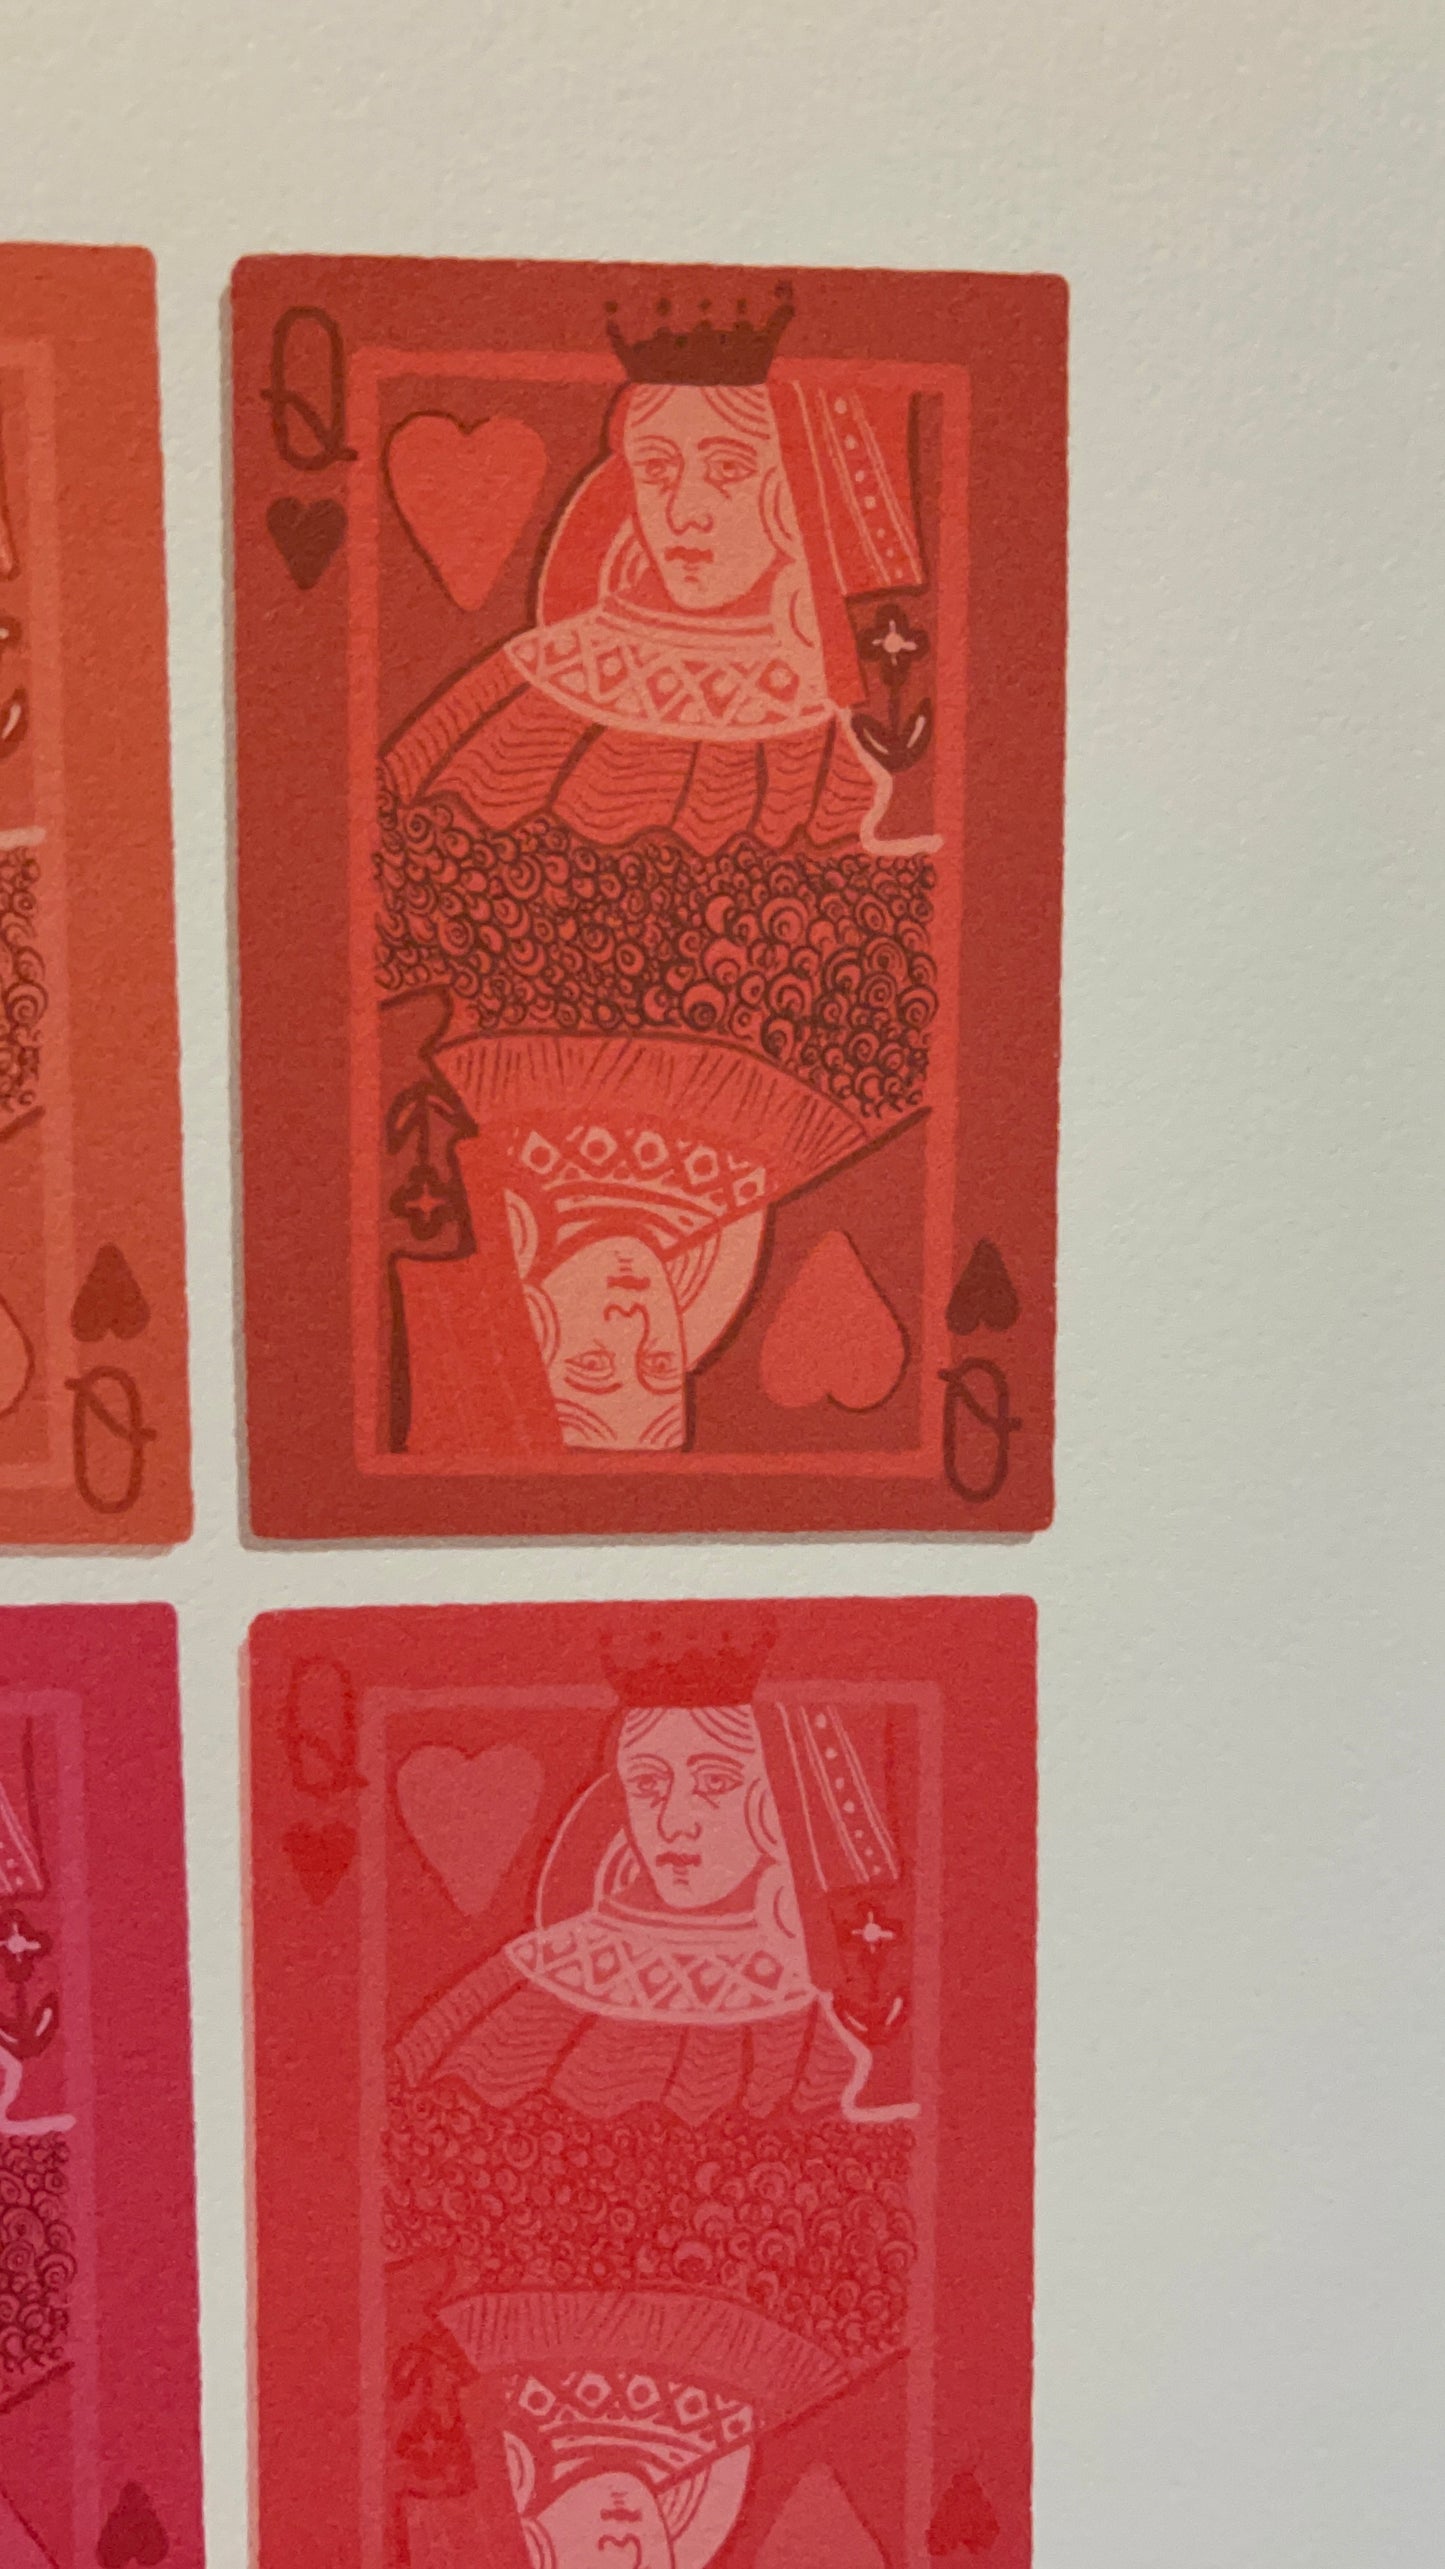 8"x10" Queen of Hearts Print